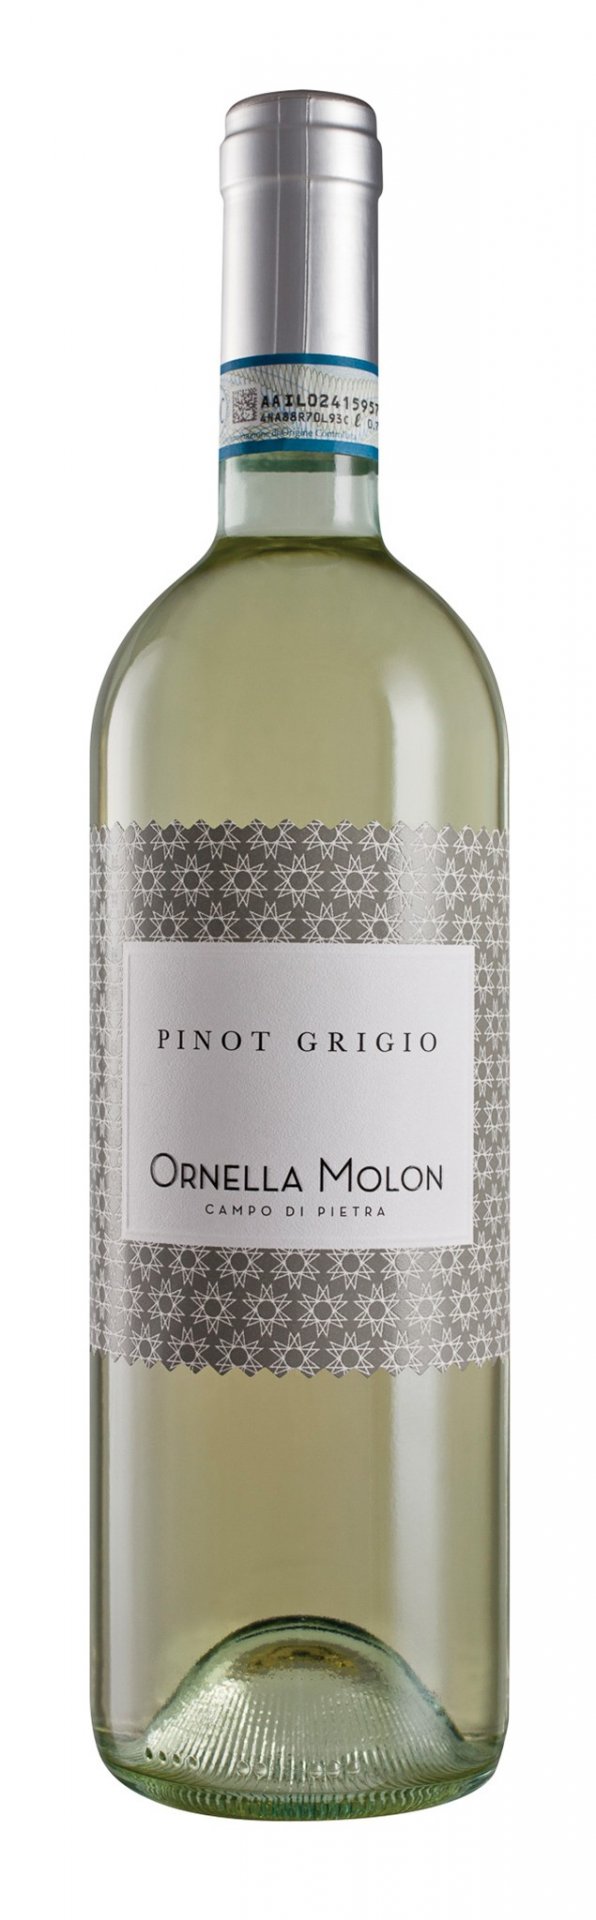 Ornella Molon Pinot Grigio